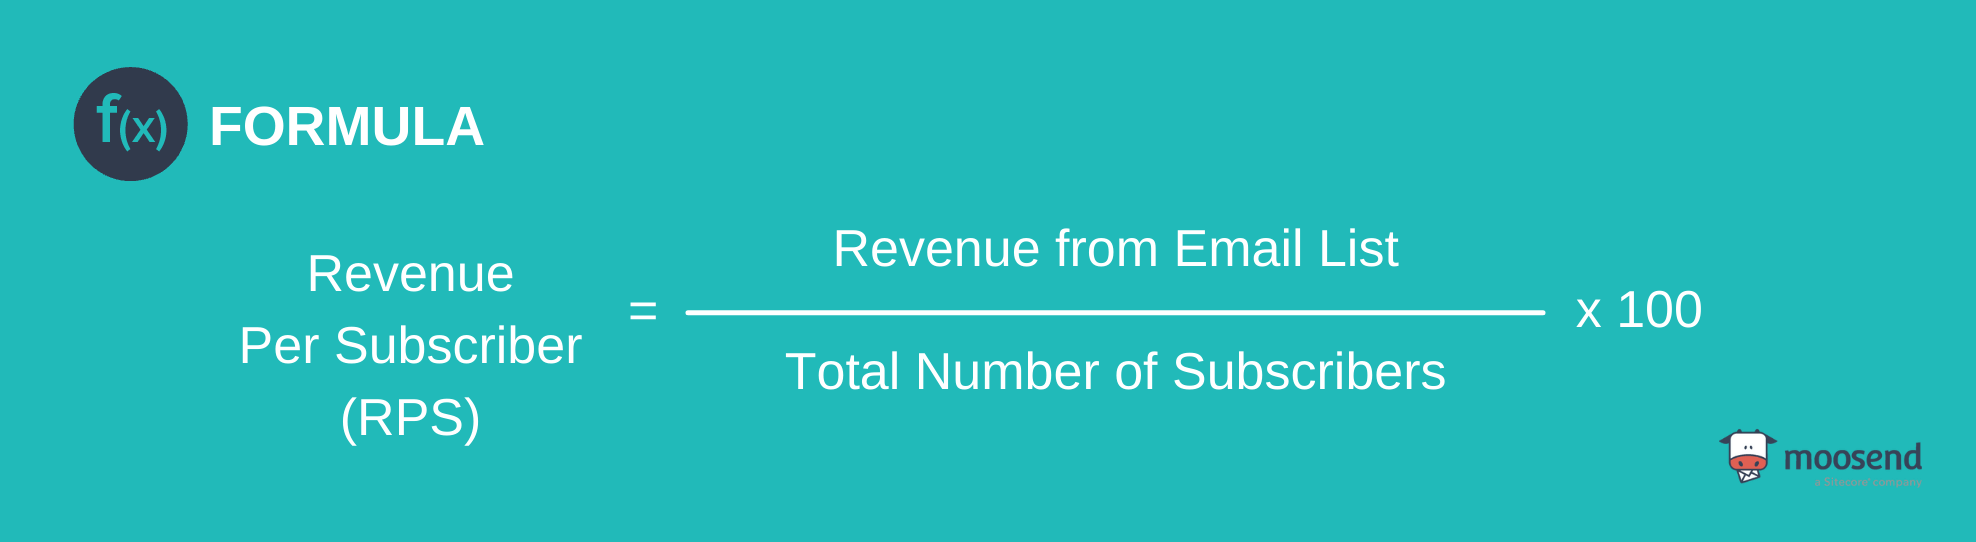 revenue per subscriber metric